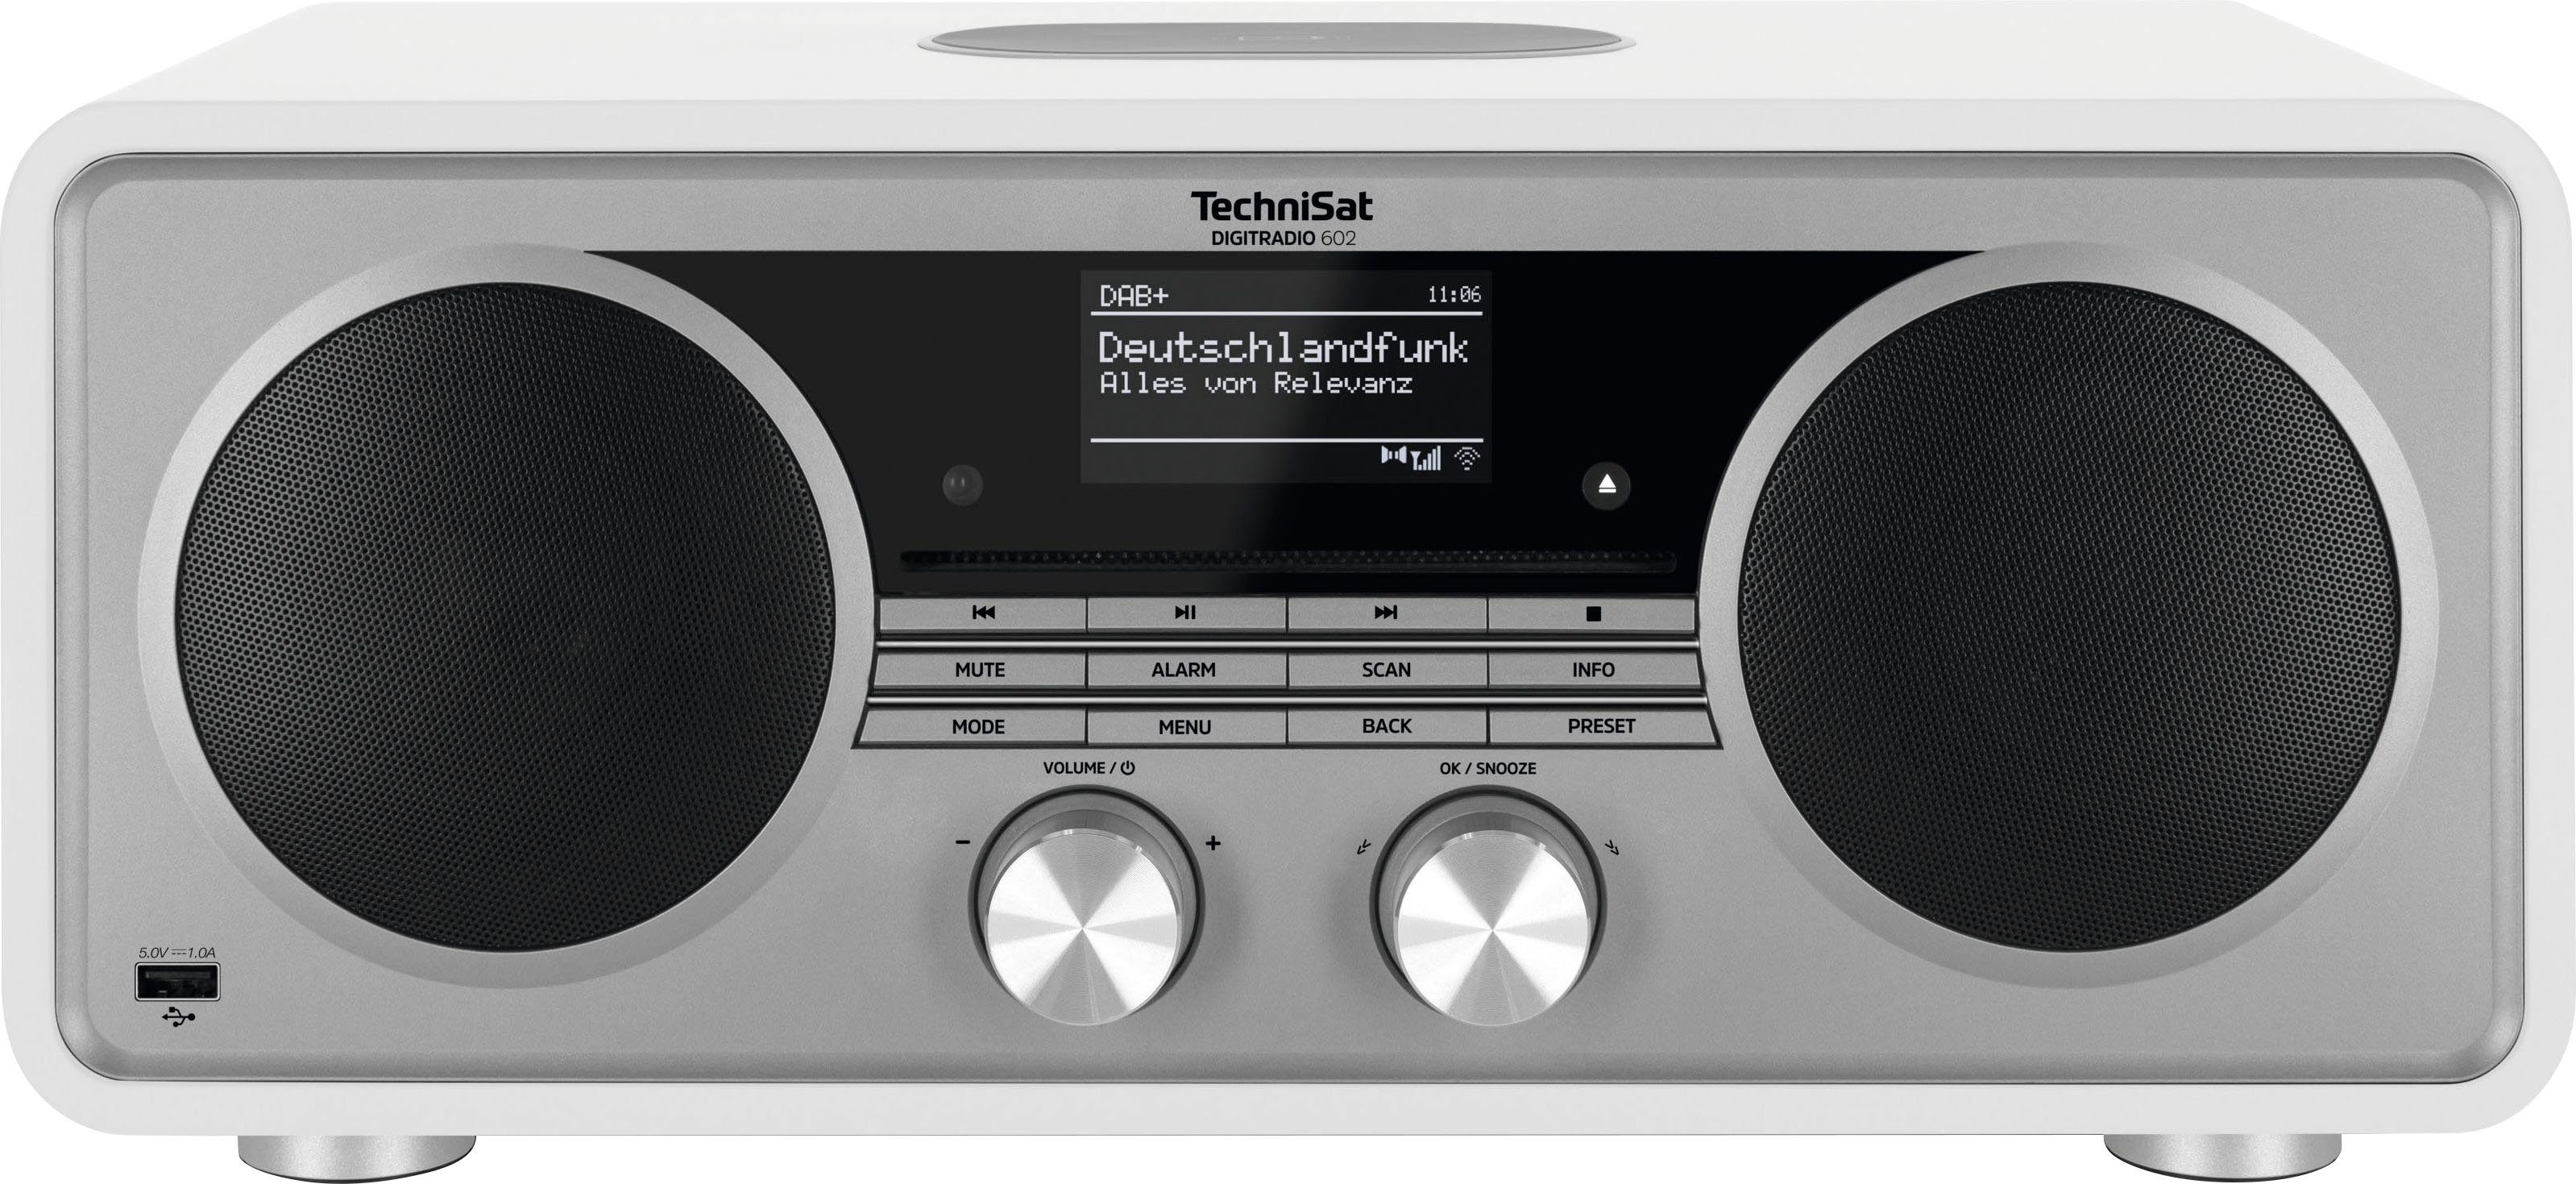 TechniSat DIGITRADIO 602 Internet-Radio (Digitalradio W, Stereoanlage, CD-Player) 70 (DAB), UKW RDS, mit Weiß/Silber